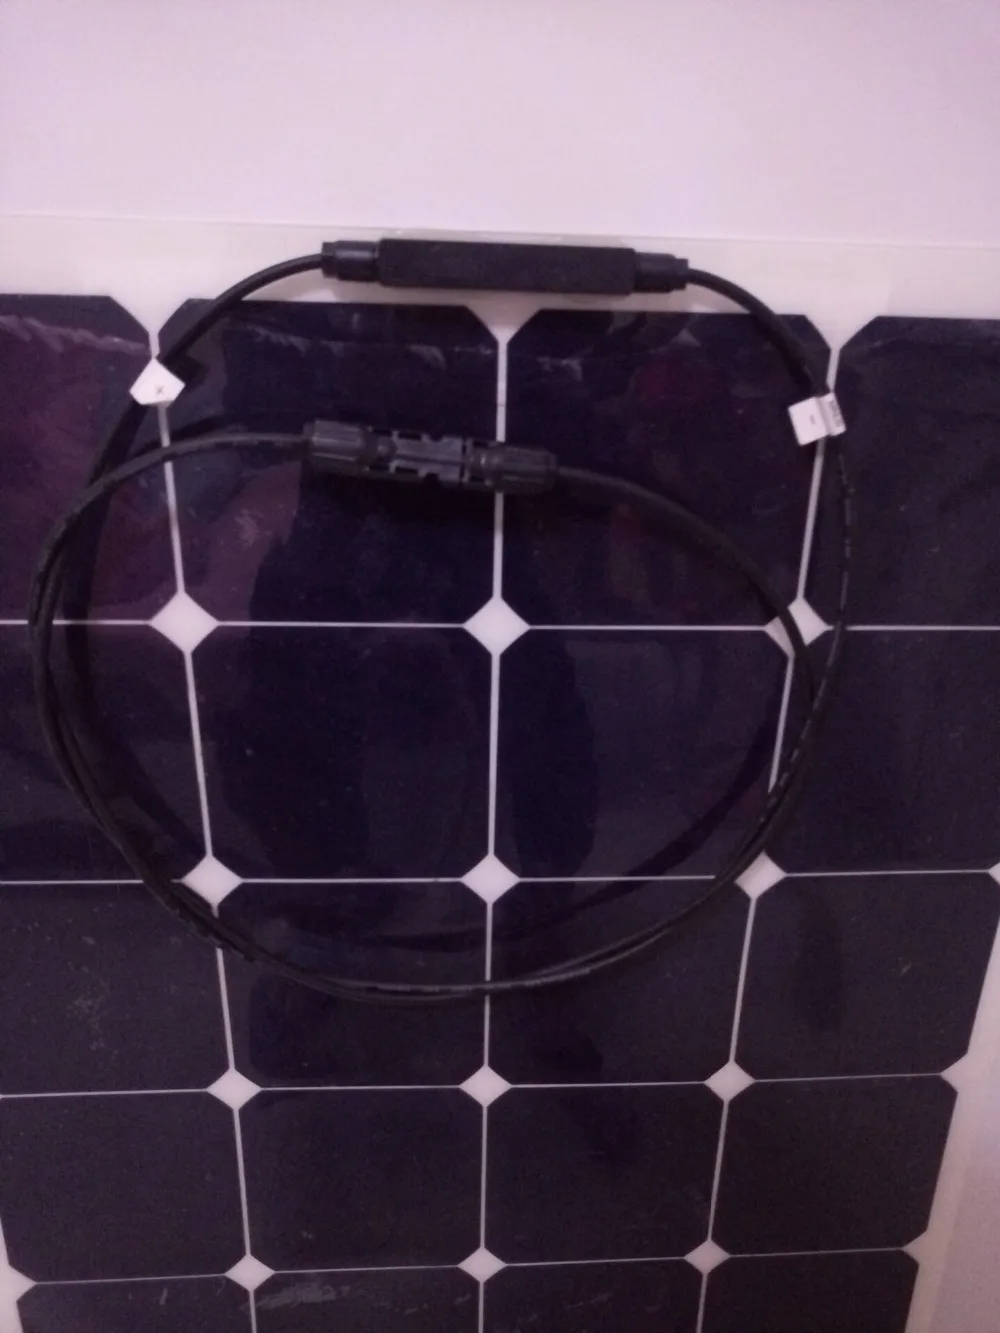 Самая выгодная цена, дешевая для продажи полугибкая 100 ватт солнечная панель 12 В высокая эффективность класс-солнечная батарея